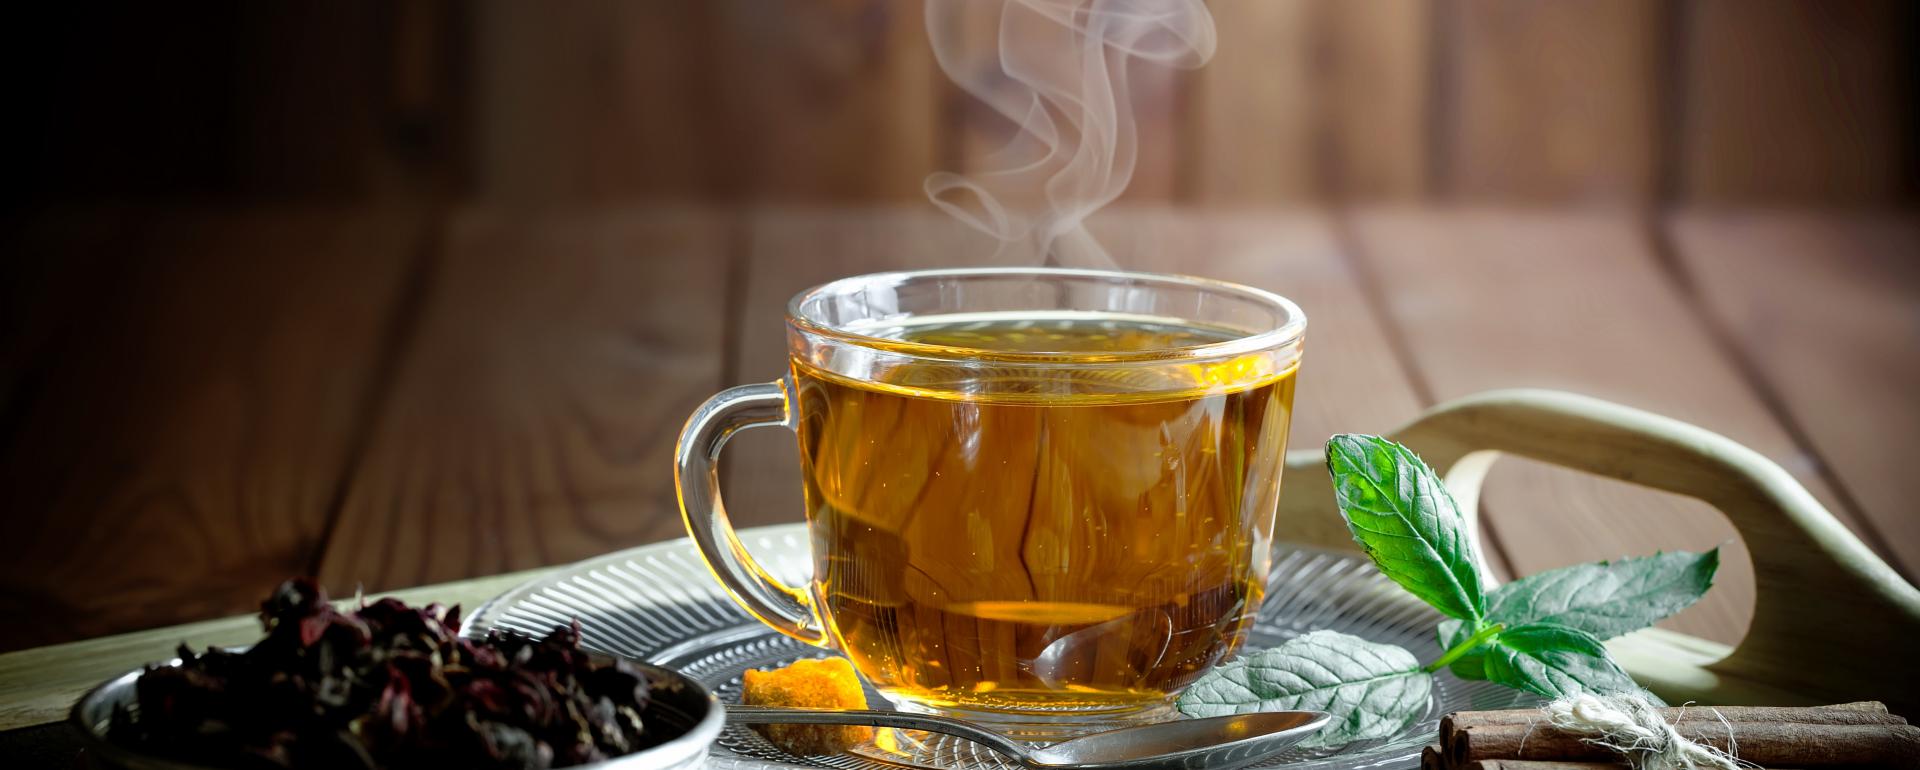 Napój pełen ciepła, czyli coś o herbacie